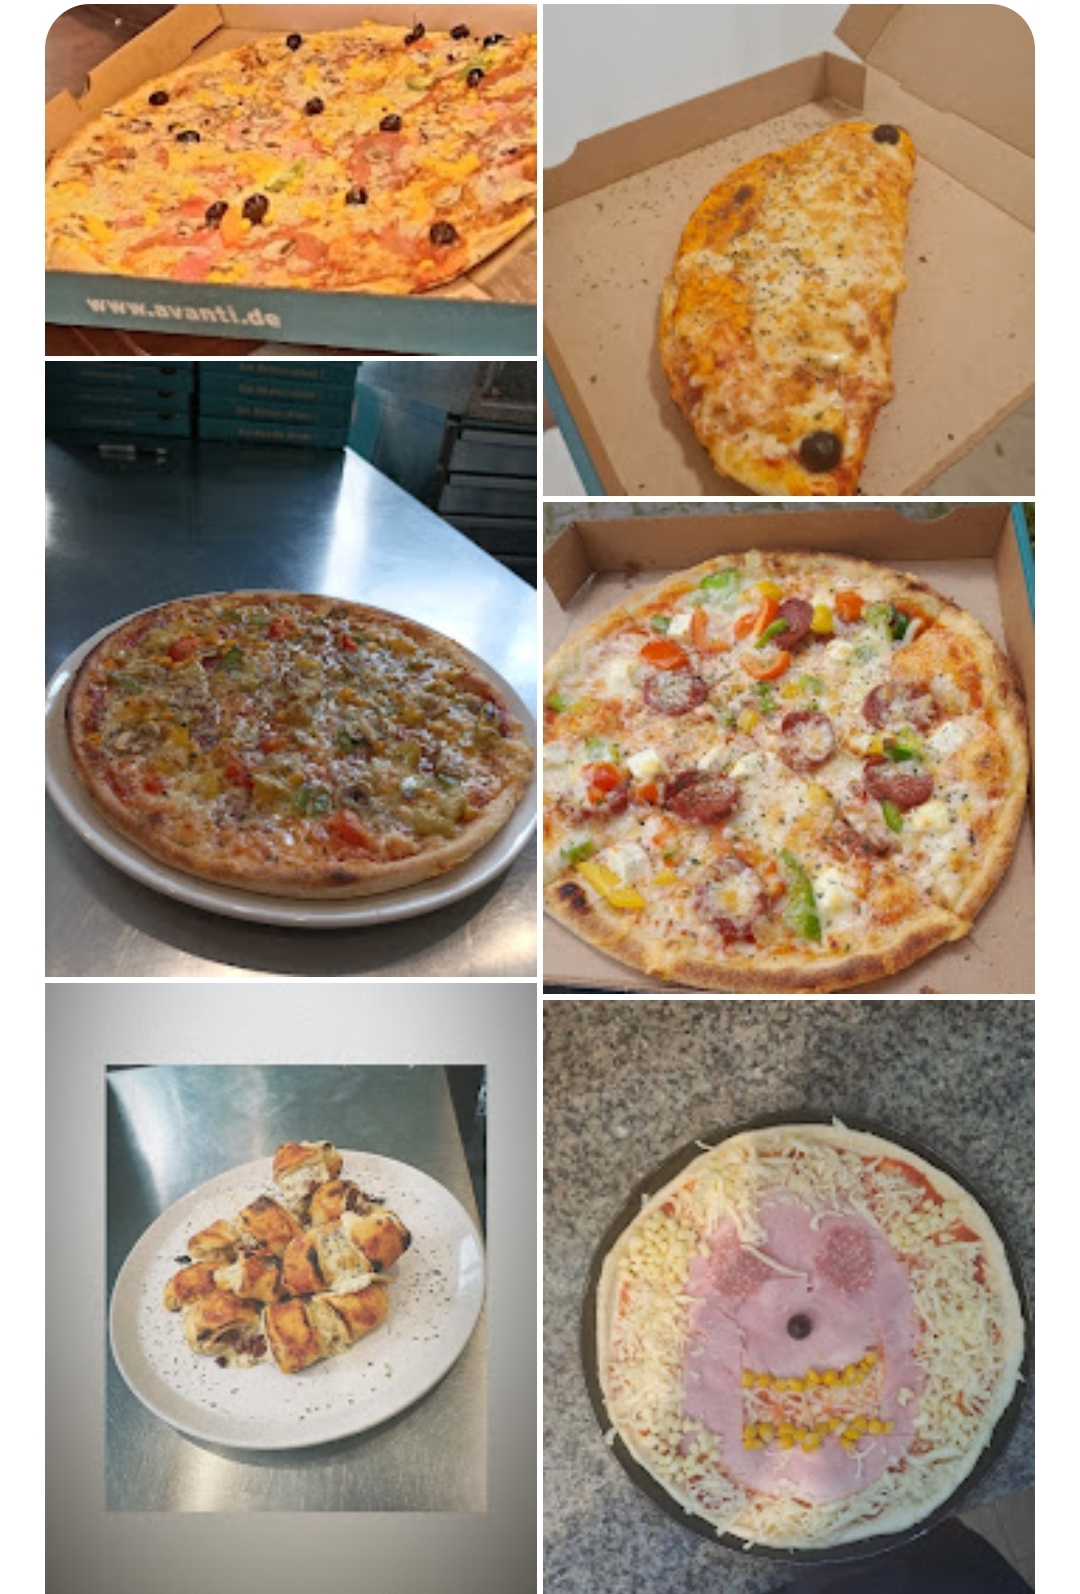 Bild 3 Pizza Avanti in München